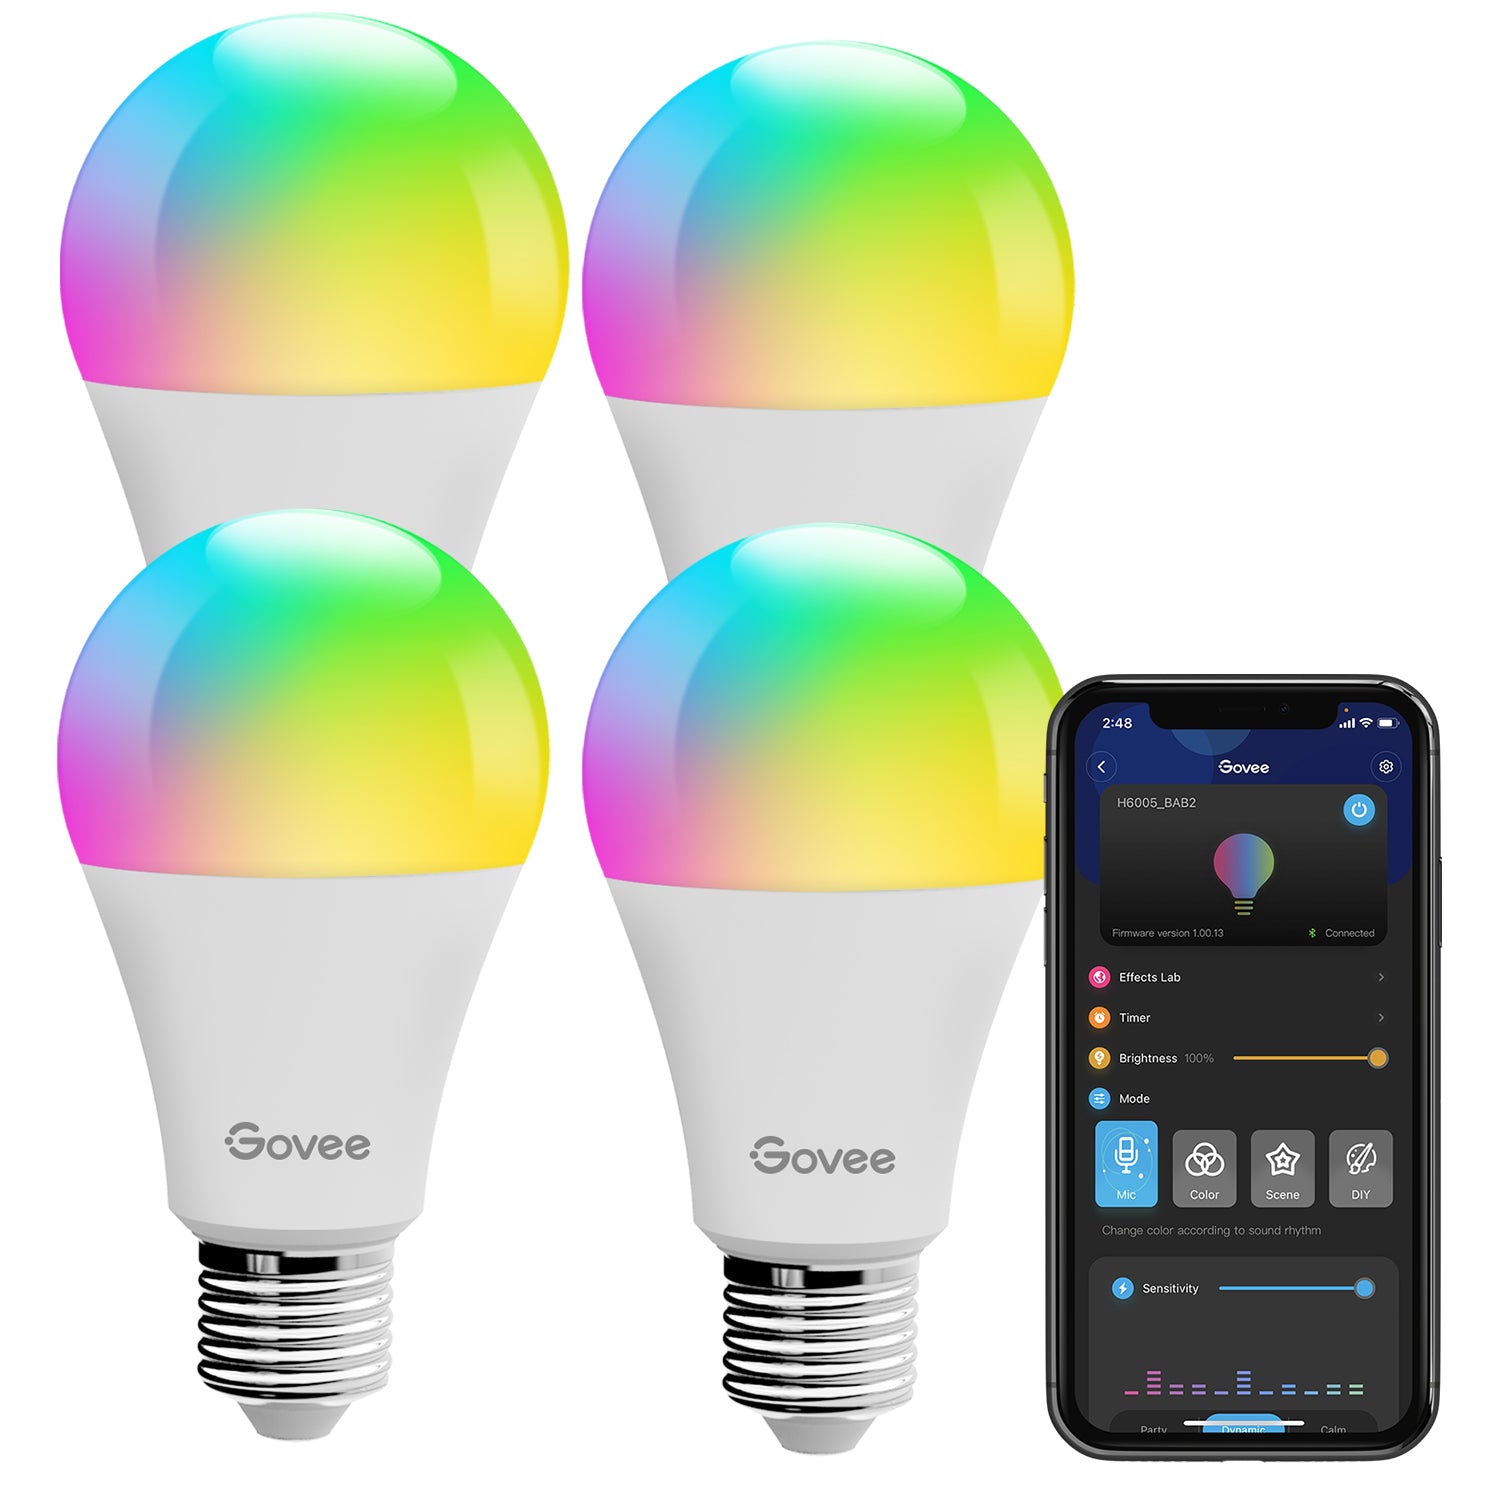 

Govee Bluetooth RGBWW Smart LED Bulbs, 4 PACK